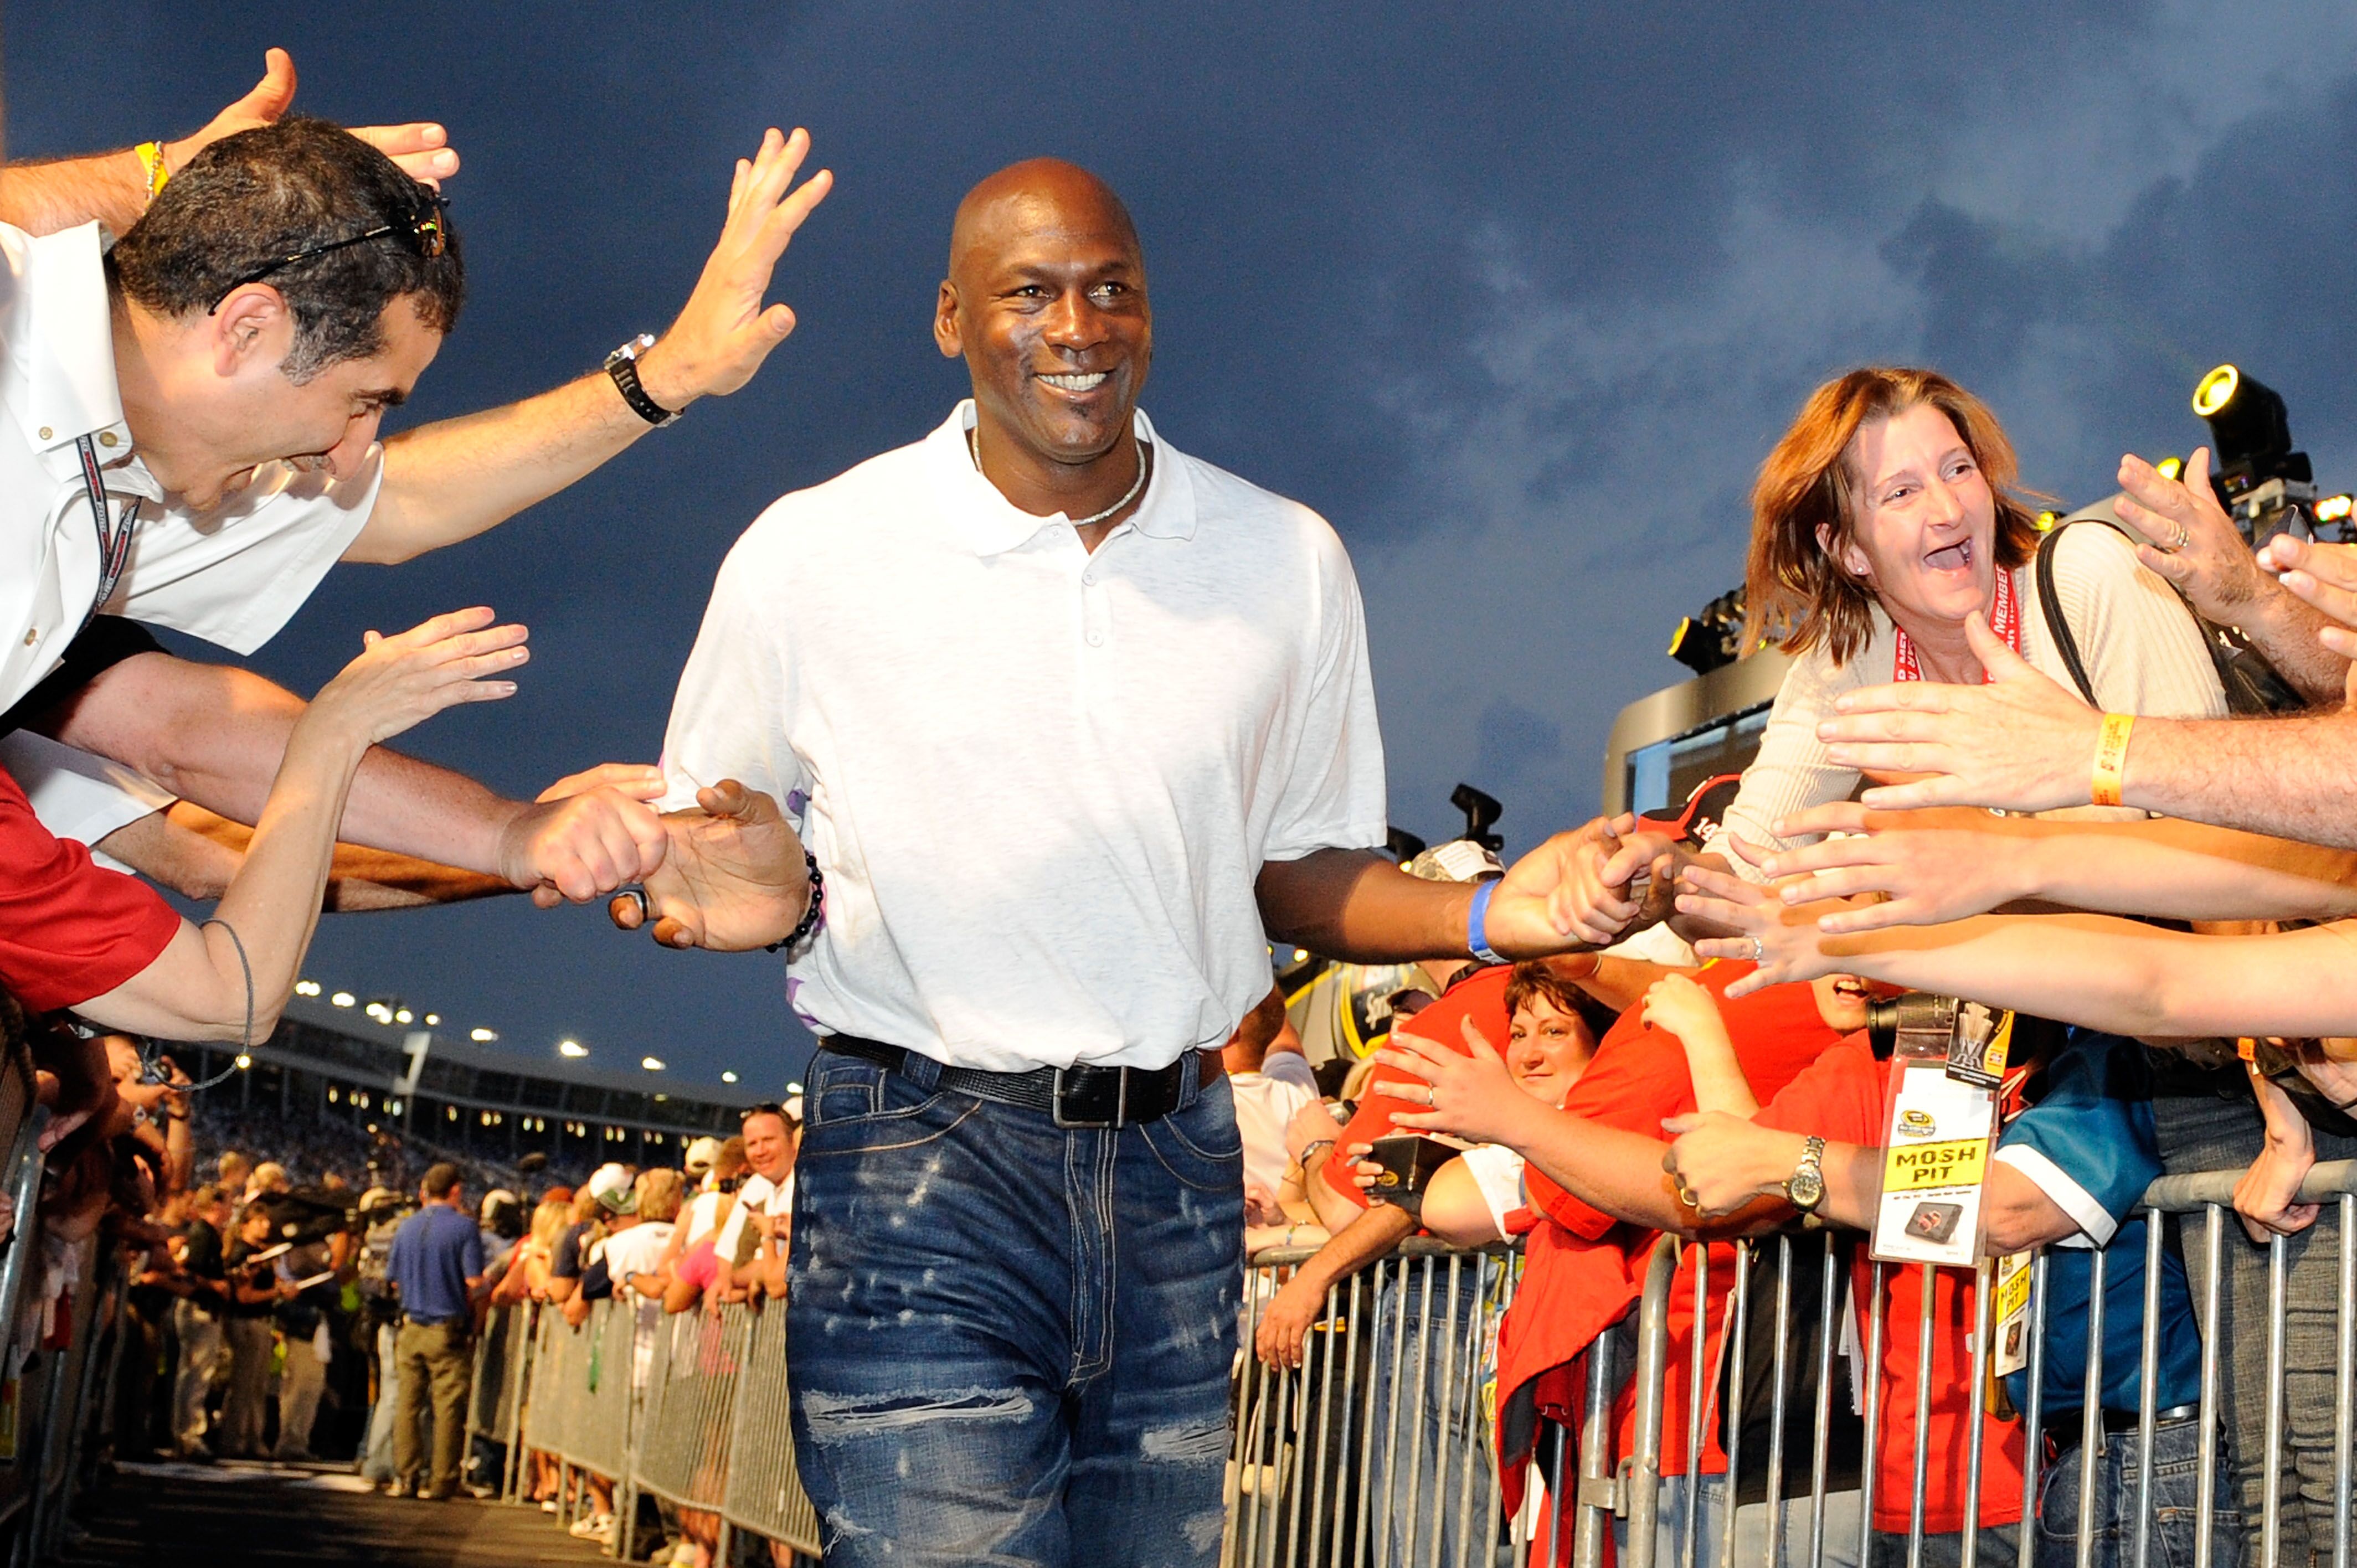 Michael Jordan a fait un high-five à la foule pendant les cérémonies d'avant-course. | Source : Getty Images